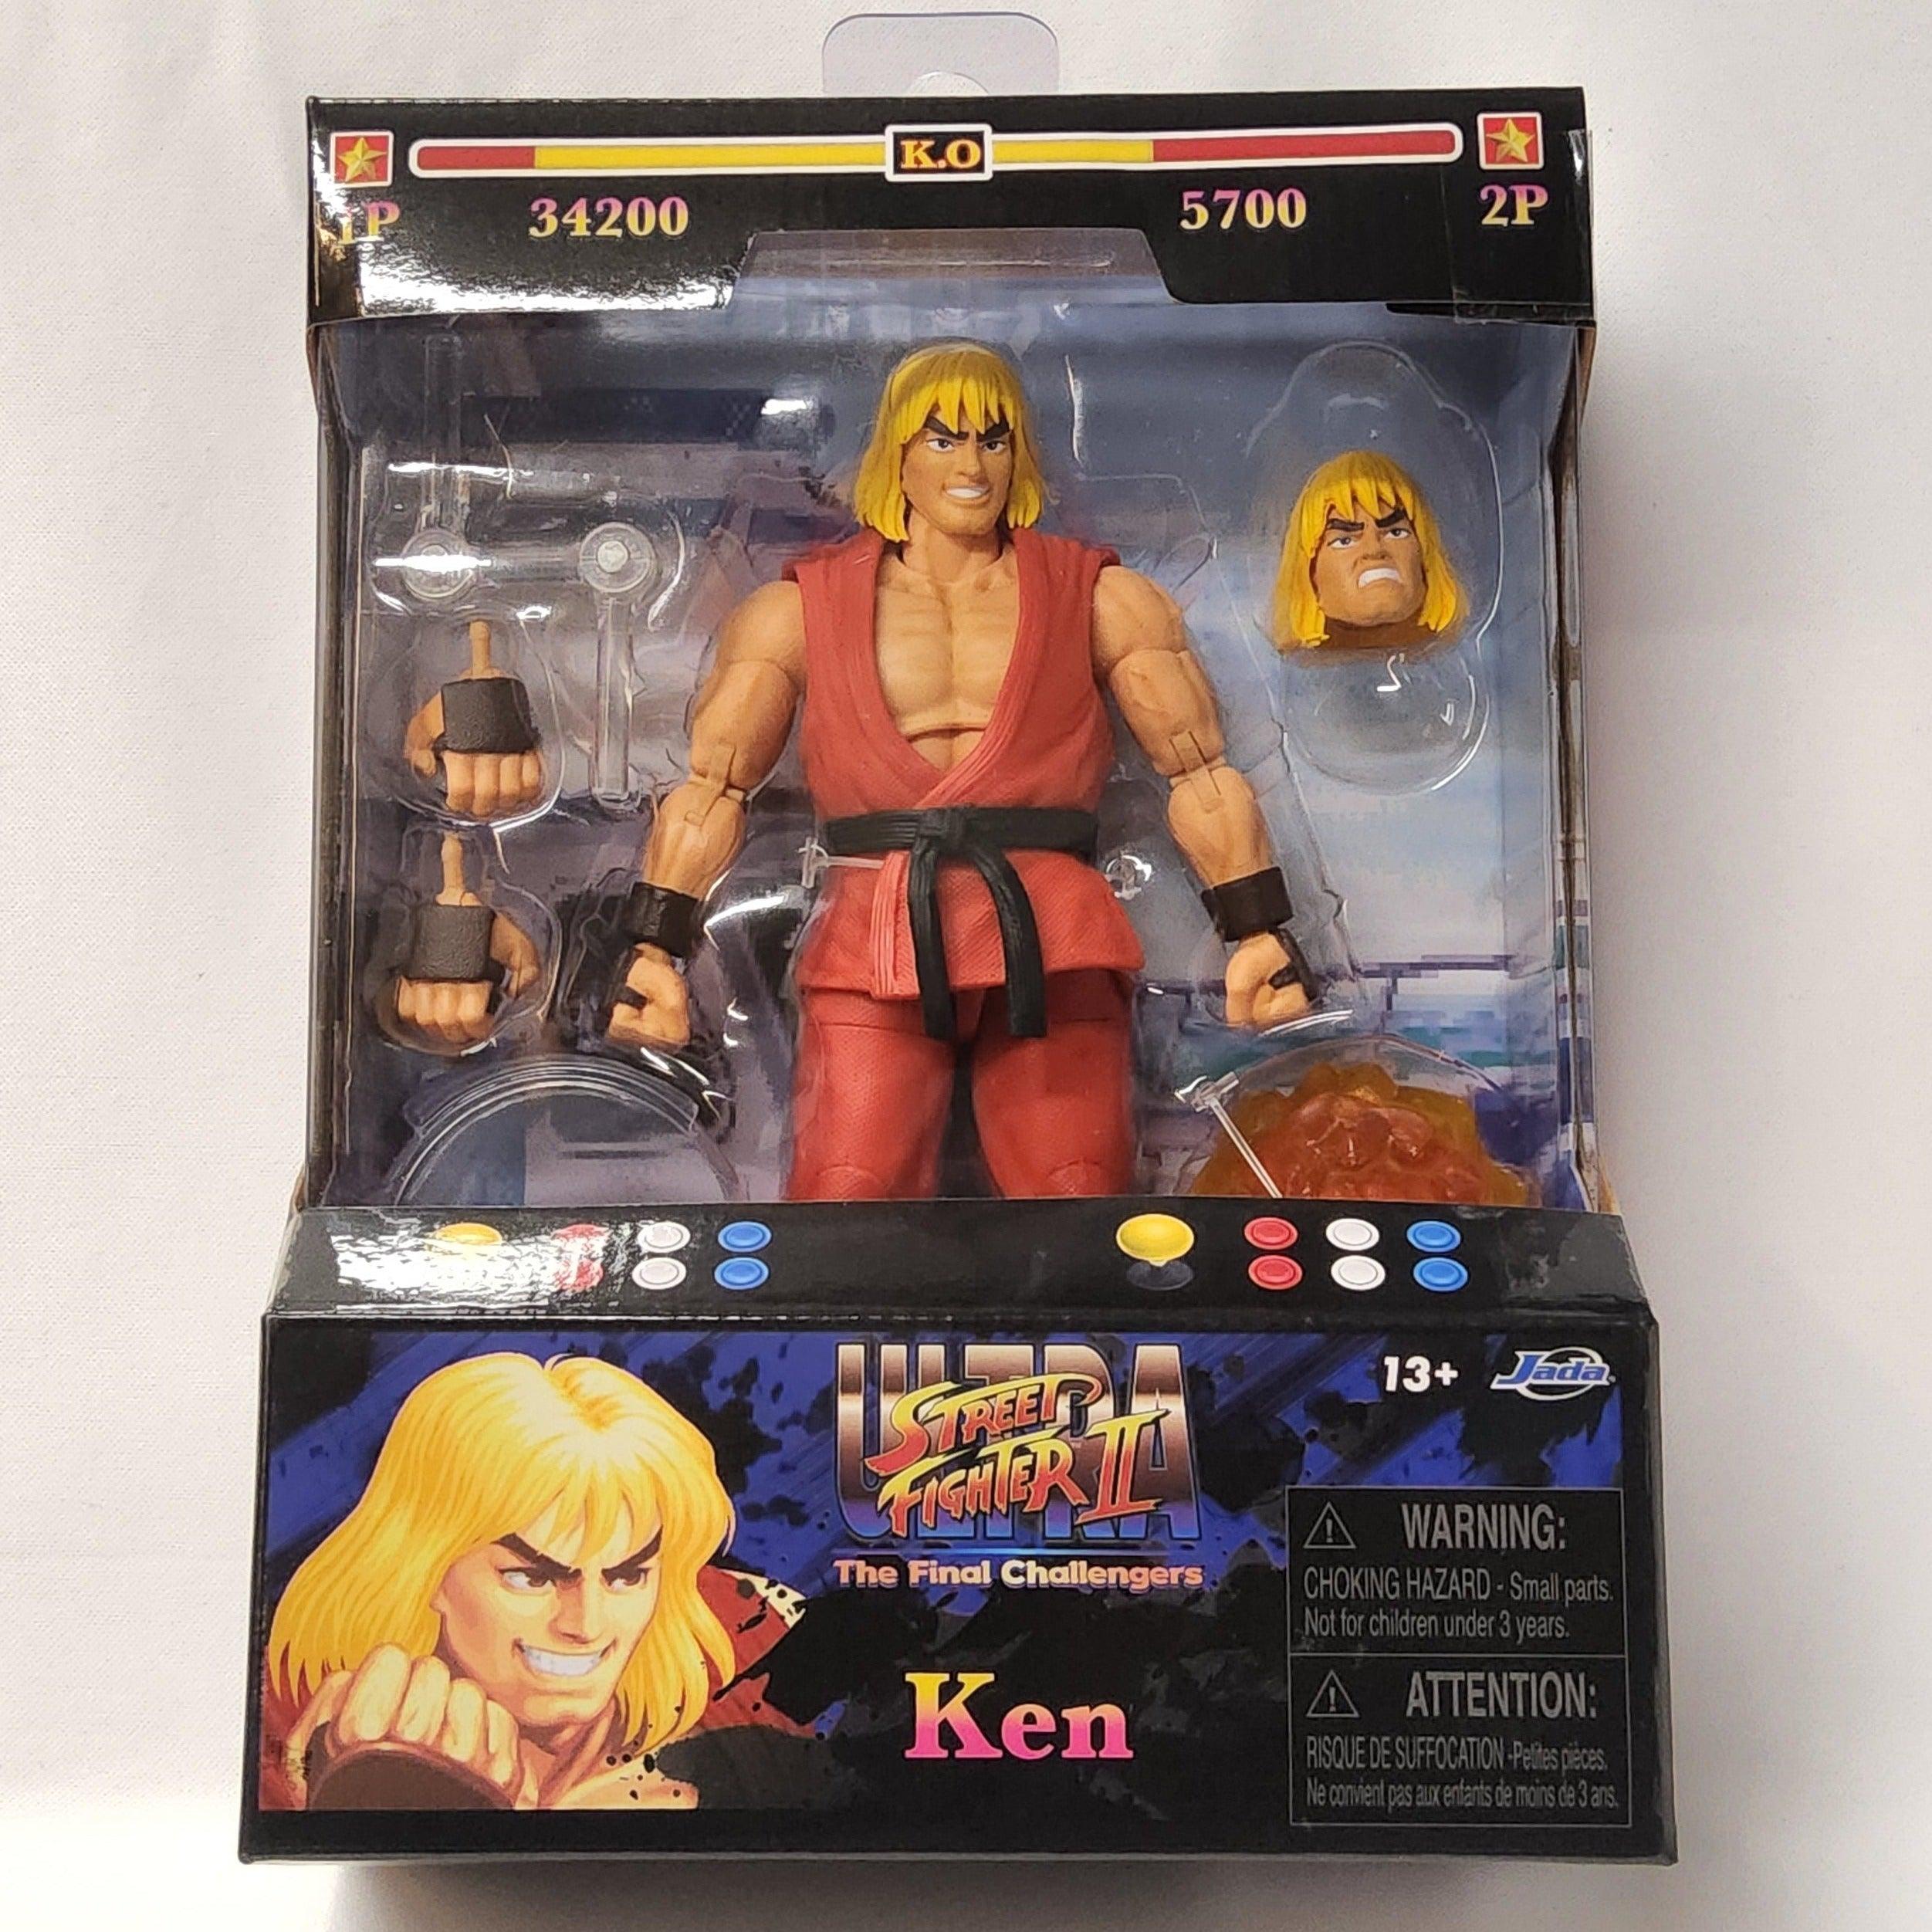 Ken 6 Ultra Street Fighter II: The Final Challengers Video Game Actio